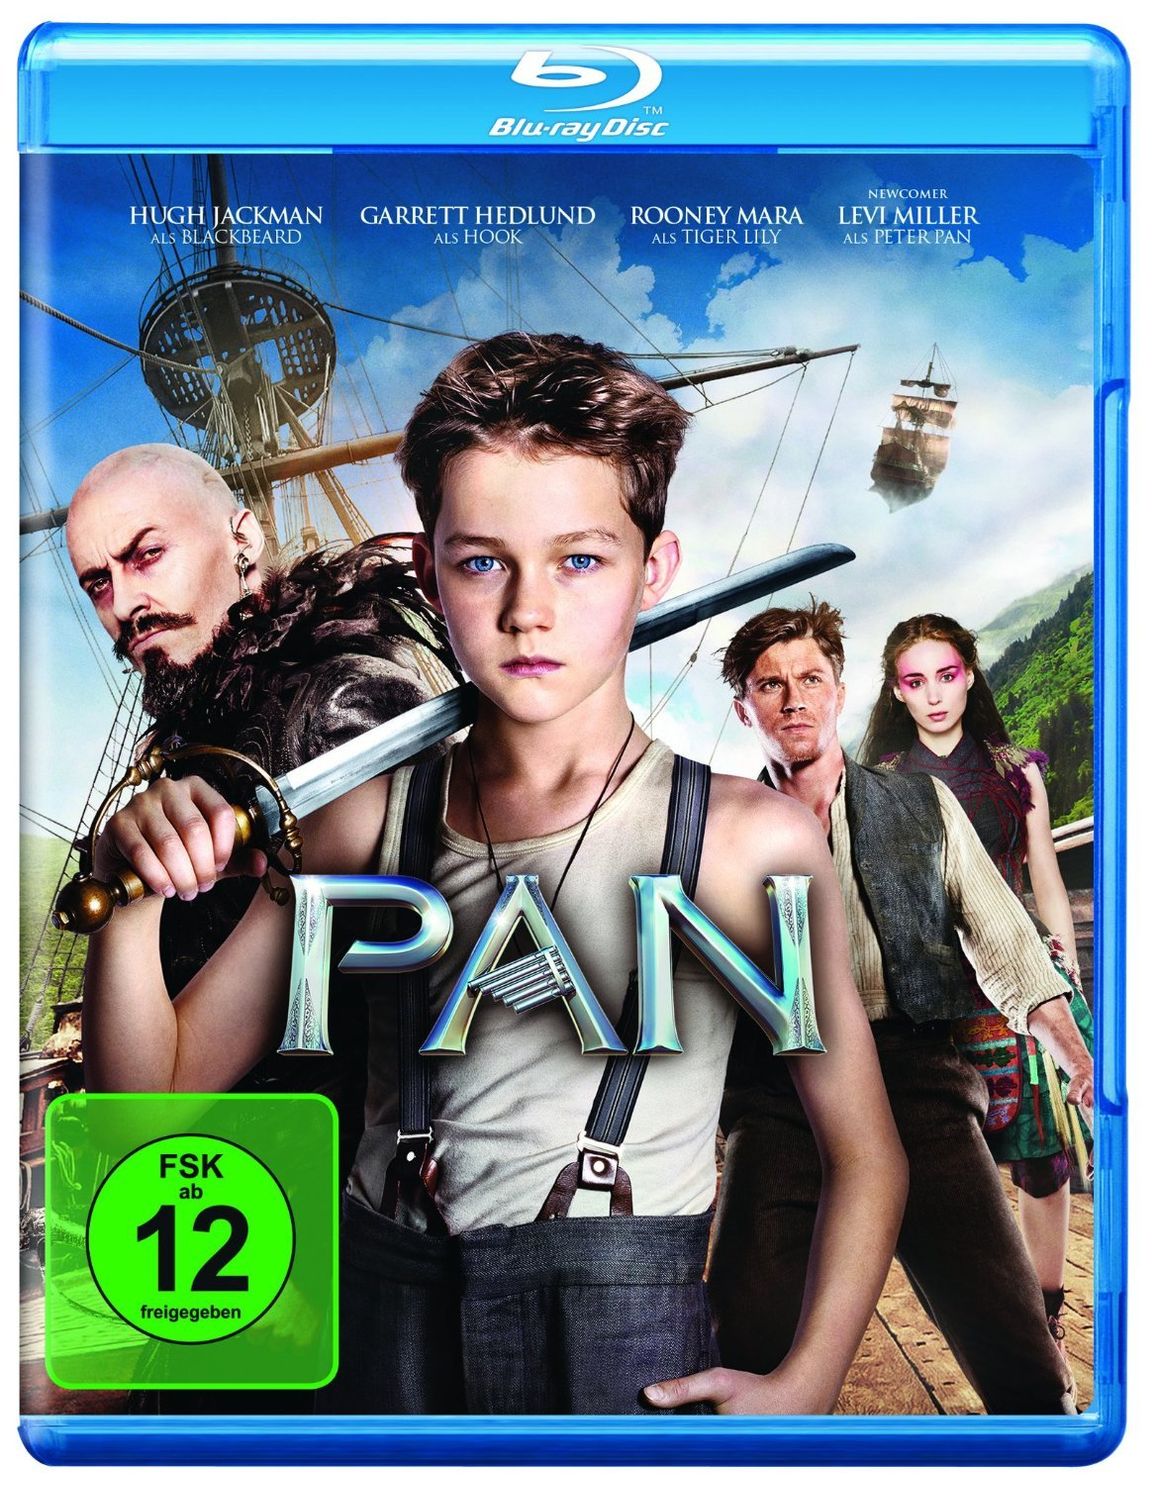 Pan Blu-ray jetzt im Weltbild.at Shop bestellen